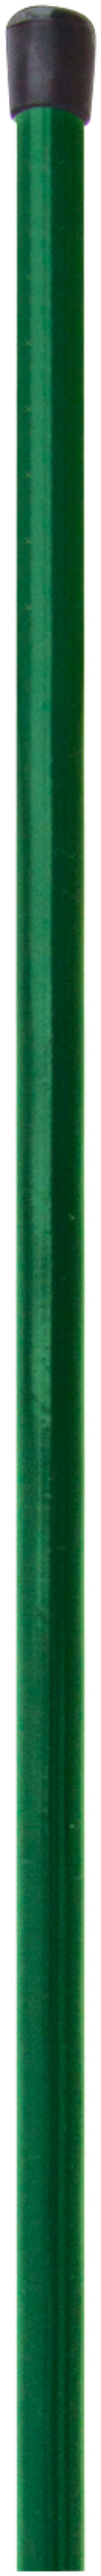 H+S Geflechtspannstab grün